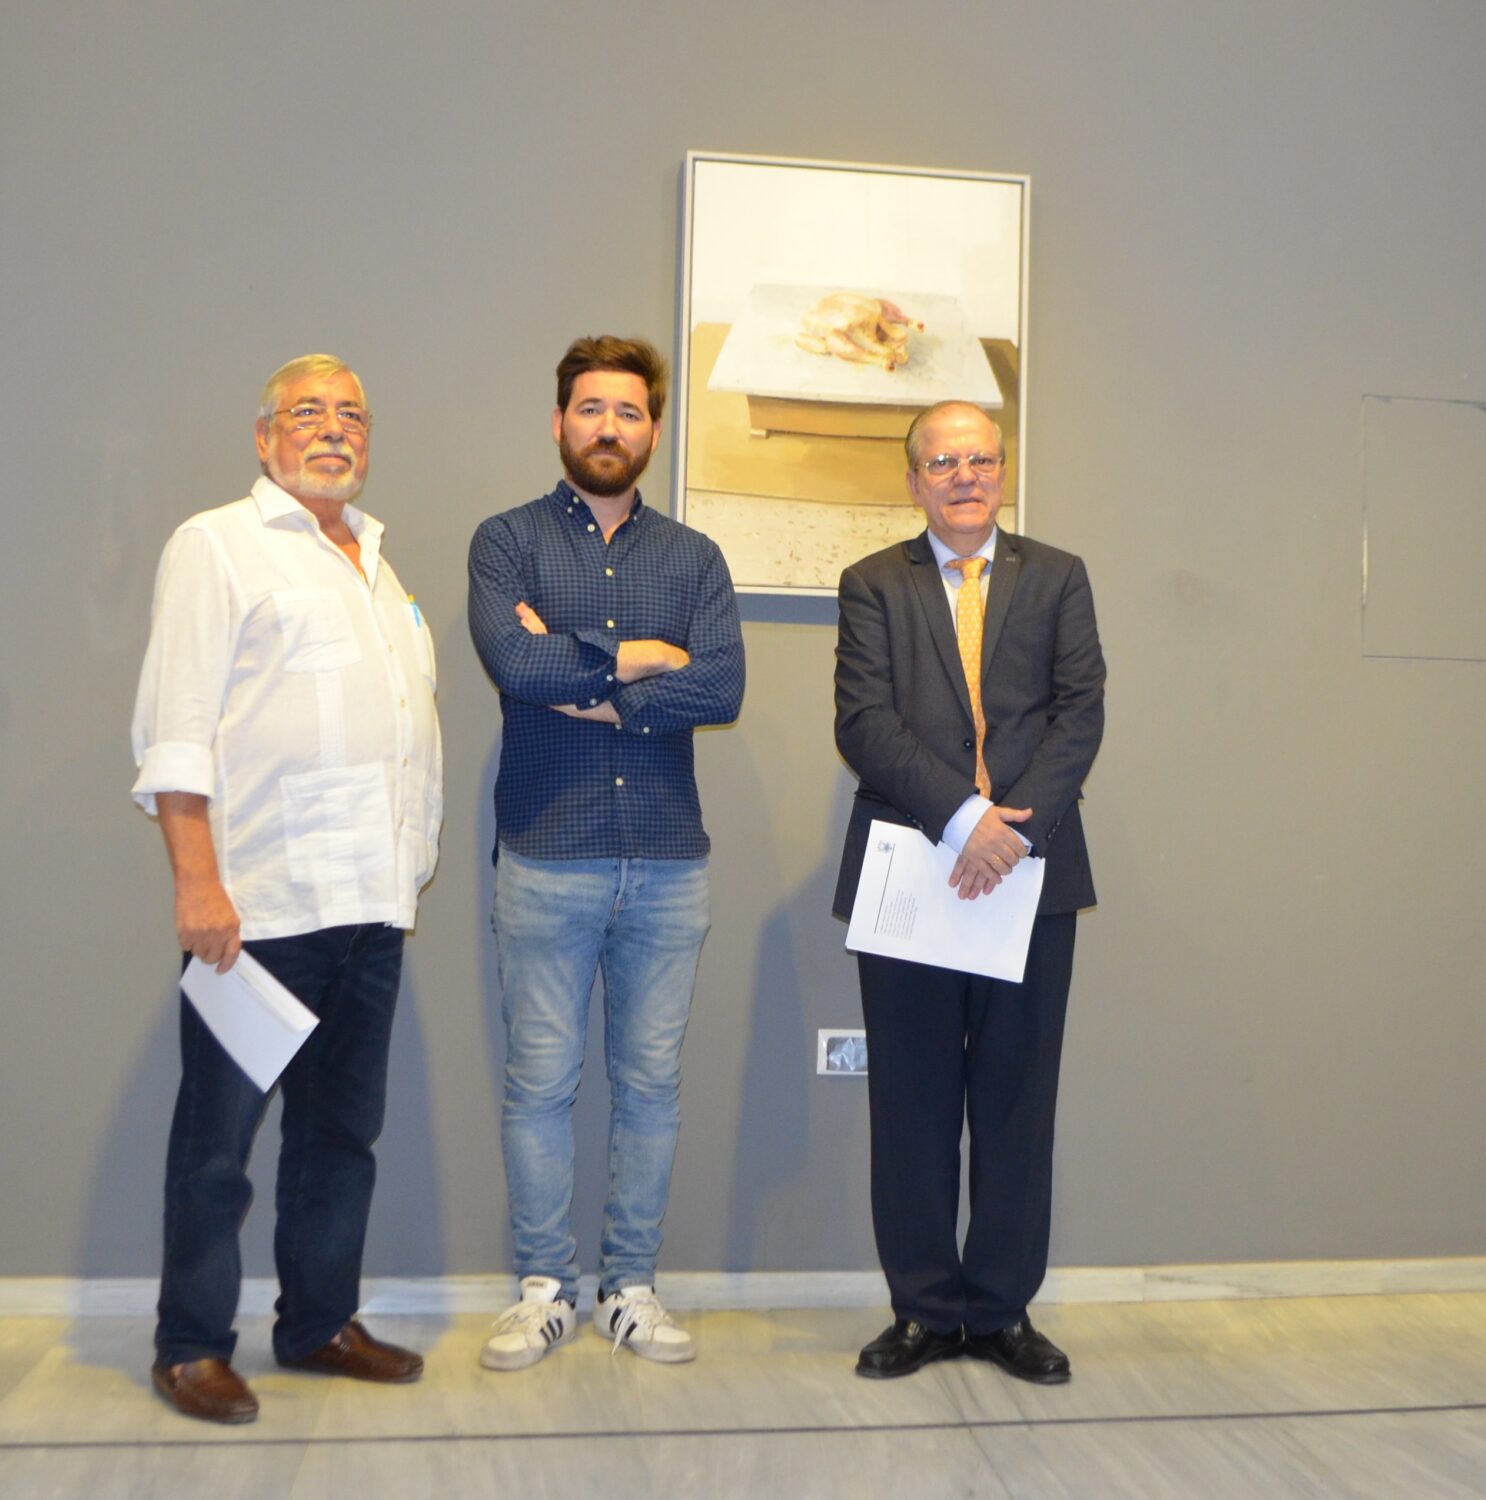 El ganador del certamen, Antonio Lara Luque, entre Antonio Zambrana Lara, Vocal de Bellas Artes, y Alberto Máximo Pérez Calero, Presidente del Ateneo de Sevilla